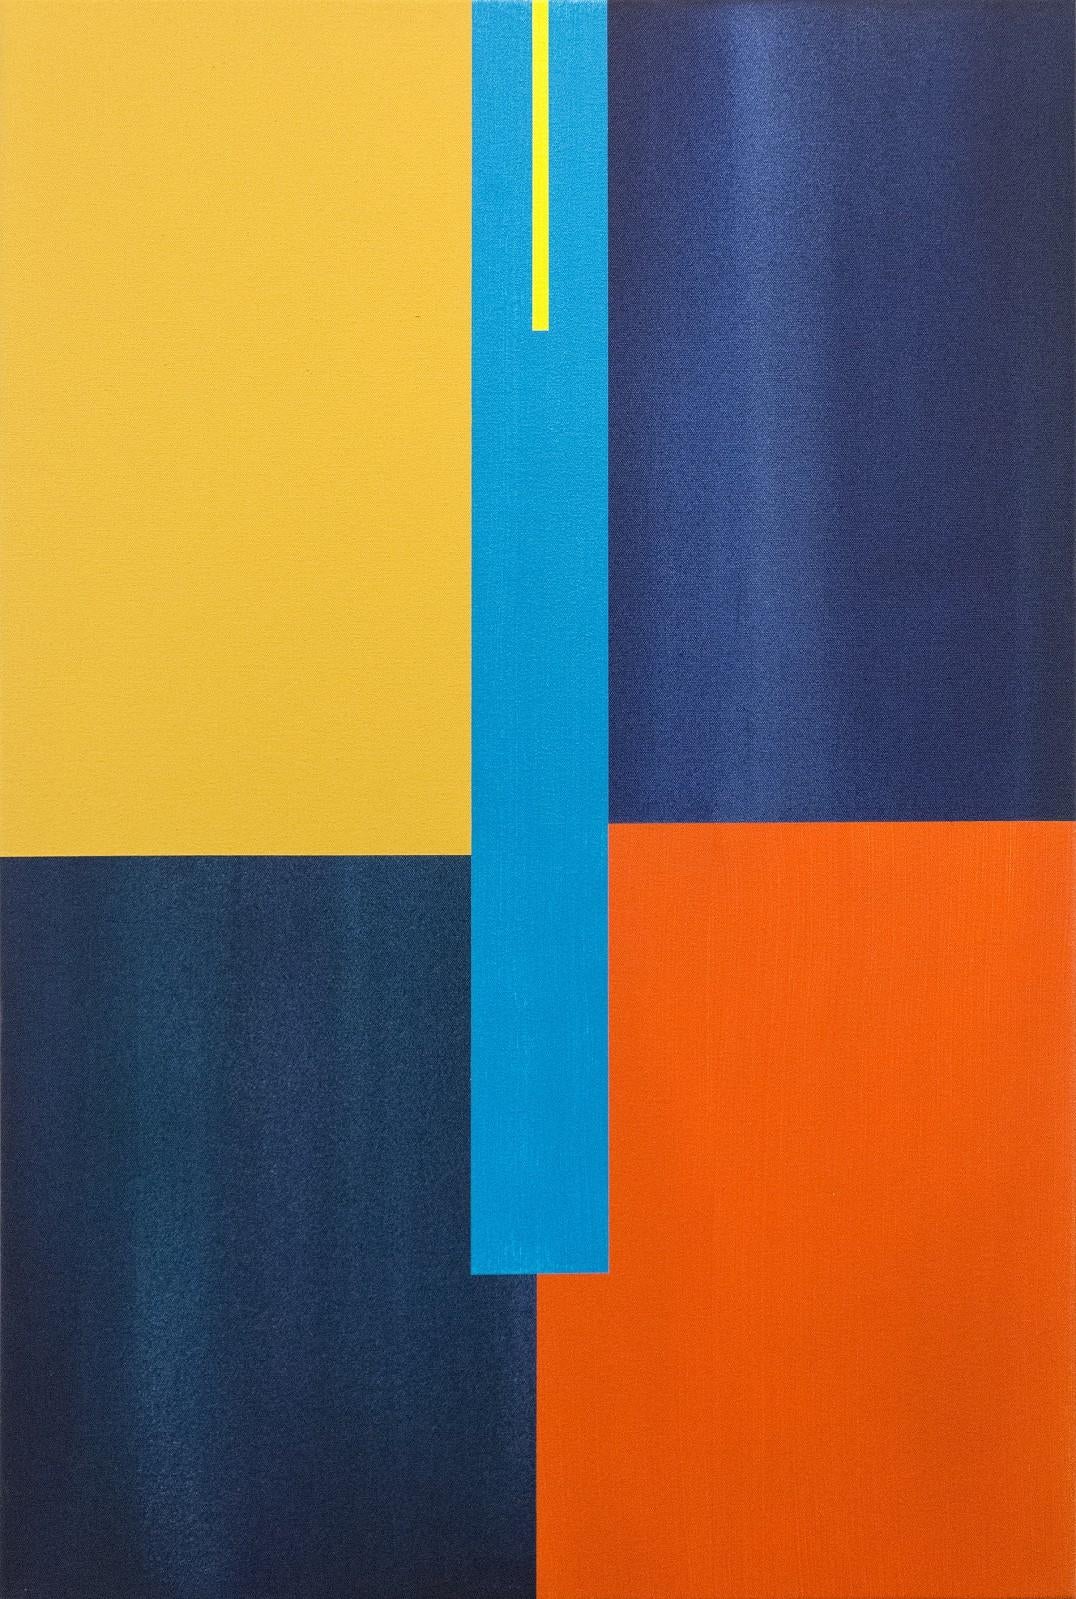 Verticalité 2 - acrylique abstraite géométrique bleue, jaune, orange, sur toile - Painting de Milly Ristvedt